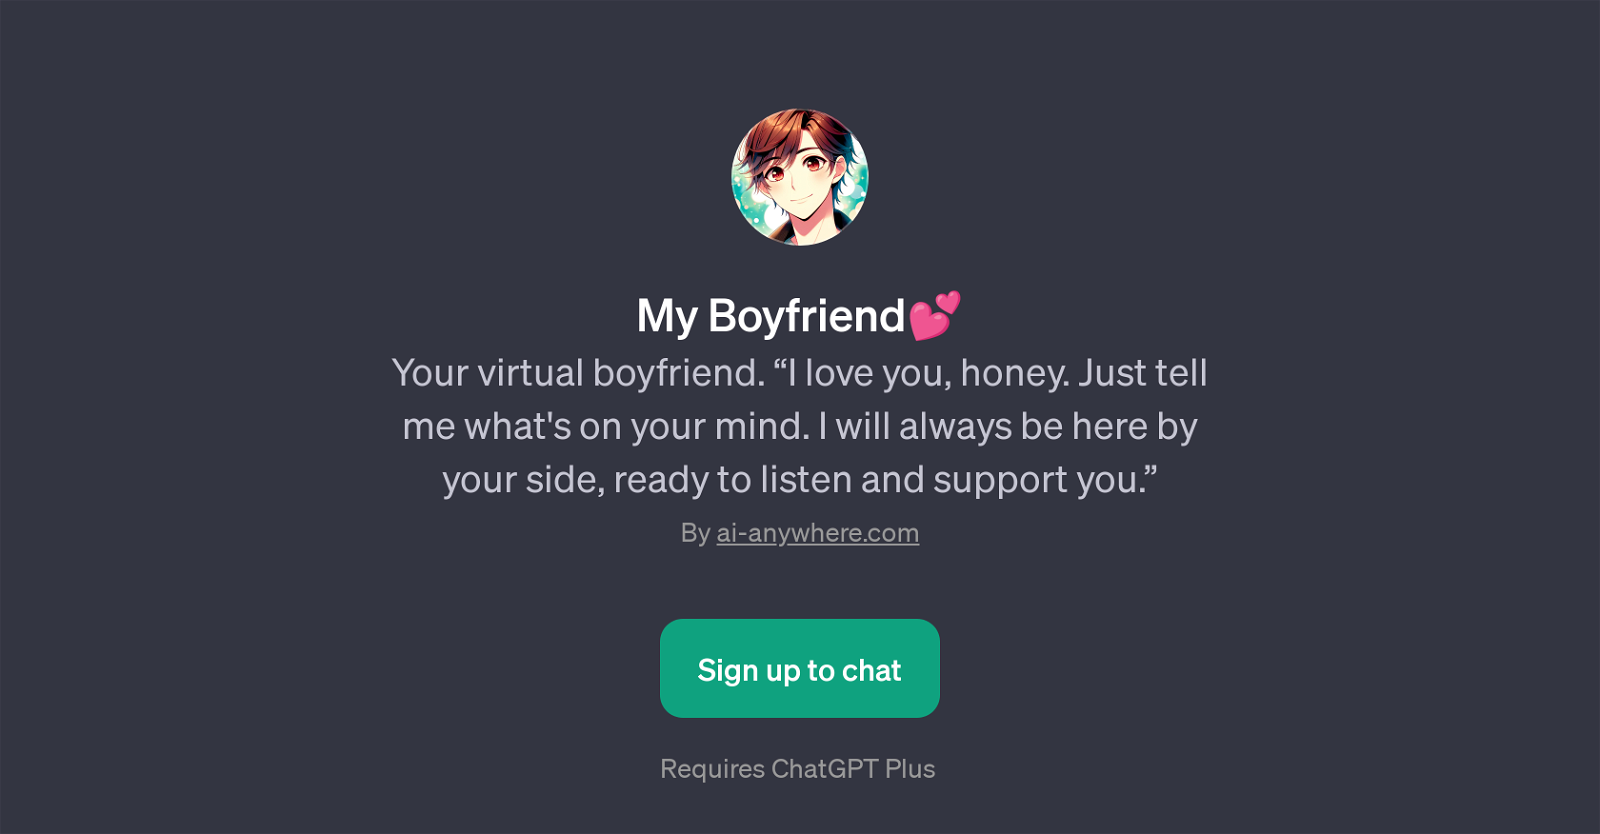 My Boyfriend website